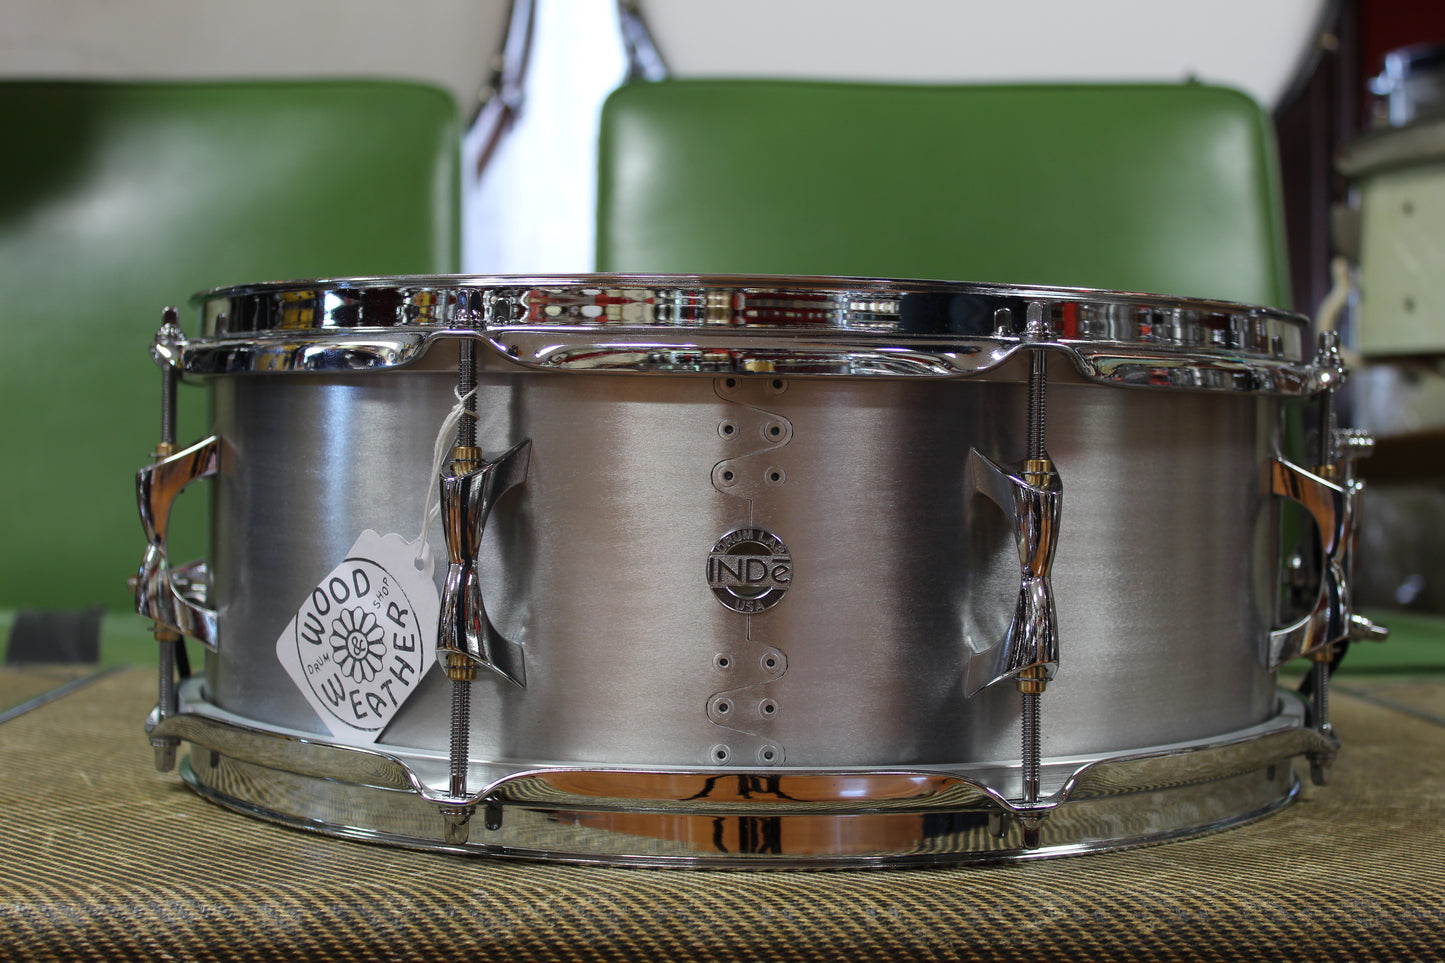 Inde Drum Lab Kalamazoo 5.5"x15" Aluminum Snare Drum